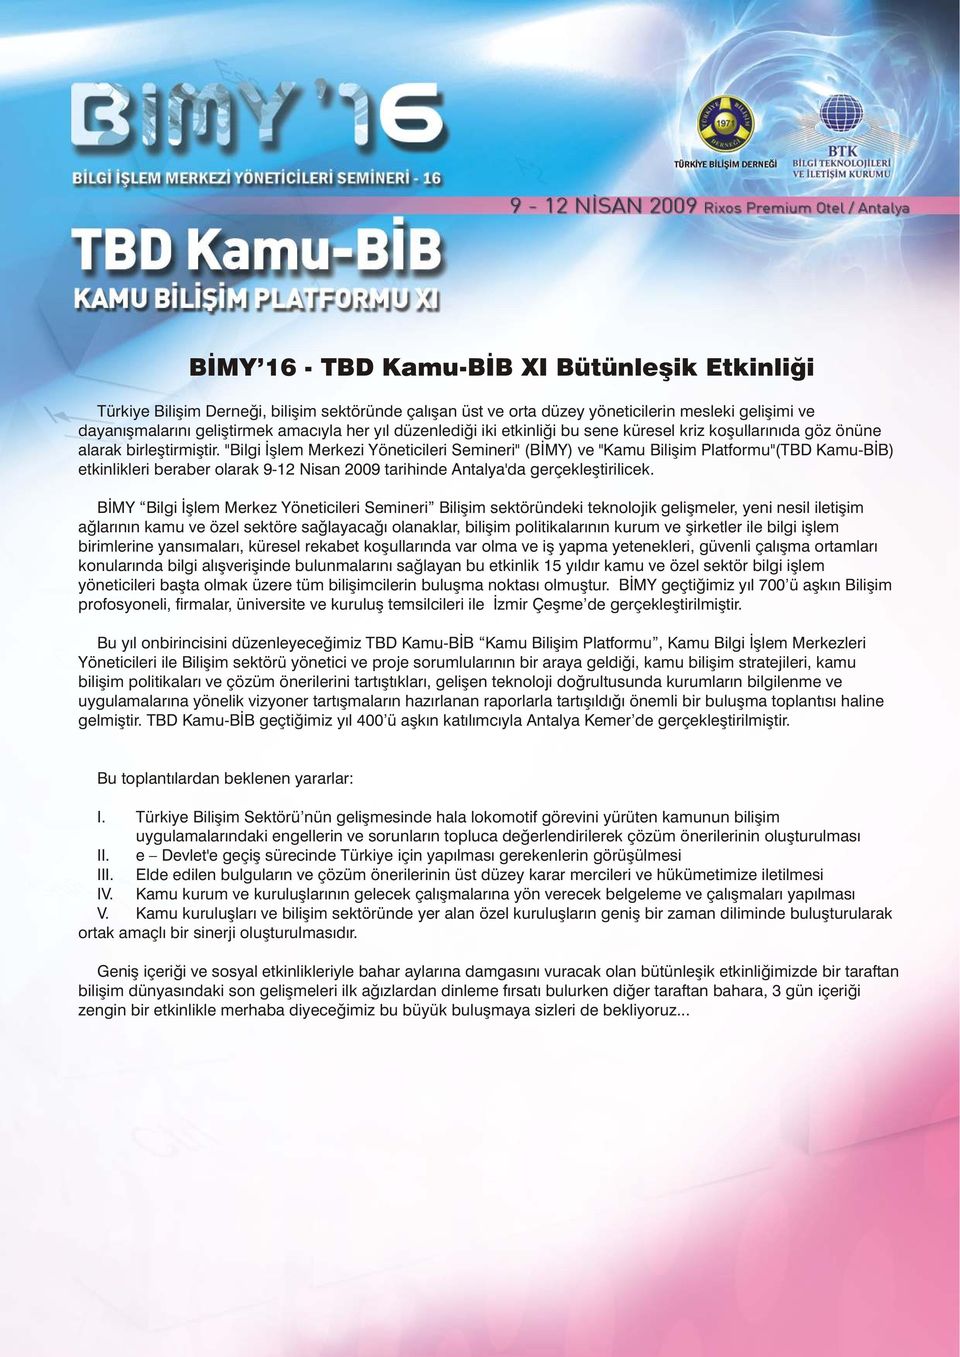 "Bilgi Ýþlem Merkezi Yöneticileri Semineri" (BÝMY) ve "Kamu Biliþim Platformu"(TBD Kamu-BÝB) etkinlikleri beraber olarak 9-12 Nisan 2009 tarihinde Antalya'da gerçekleþtirilicek.